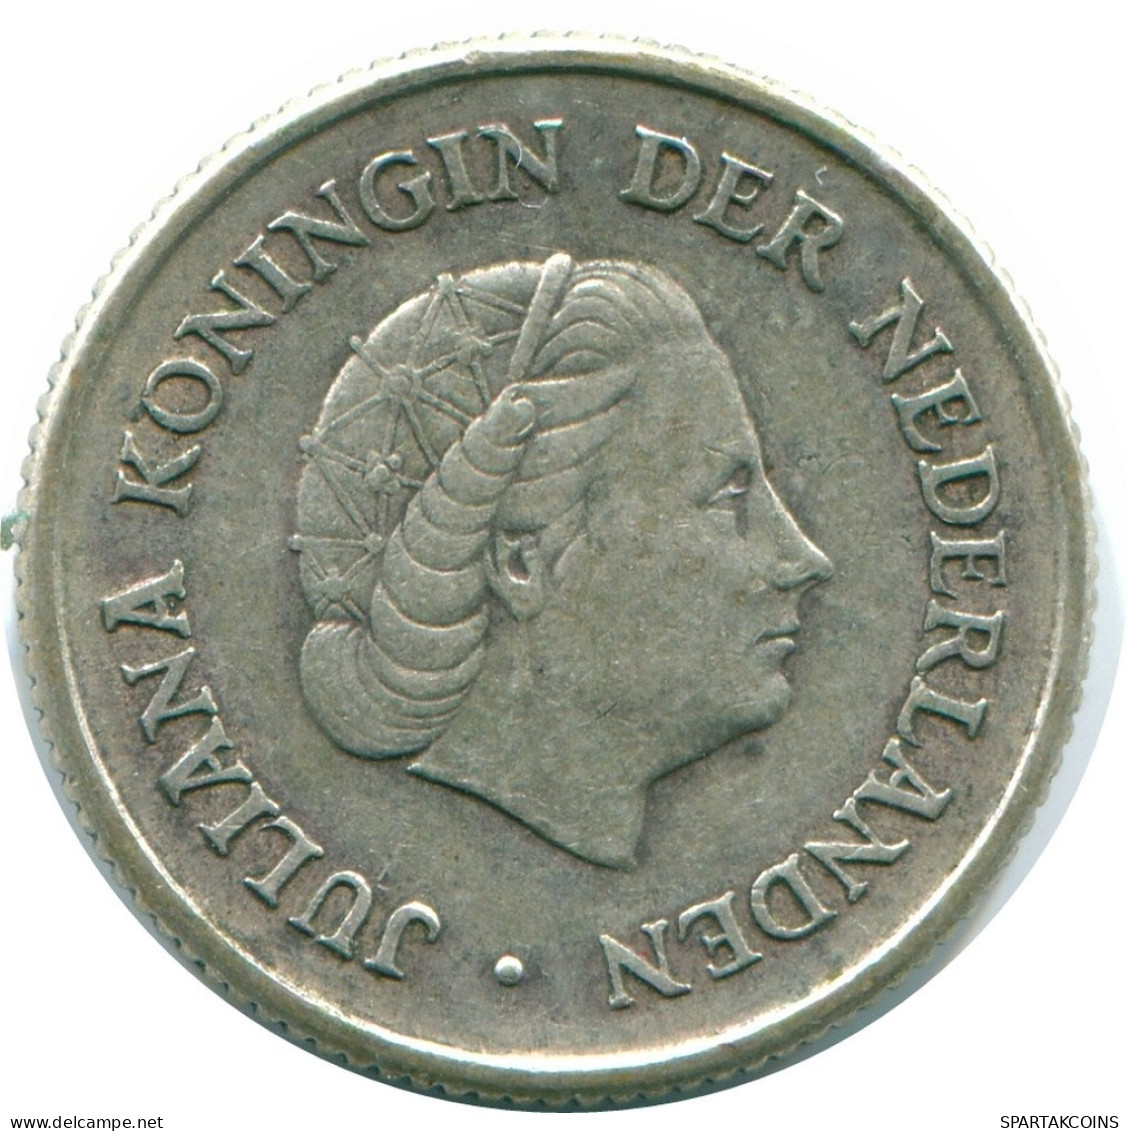 1/4 GULDEN 1967 NIEDERLÄNDISCHE ANTILLEN SILBER Koloniale Münze #NL11525.4.D.A - Nederlandse Antillen